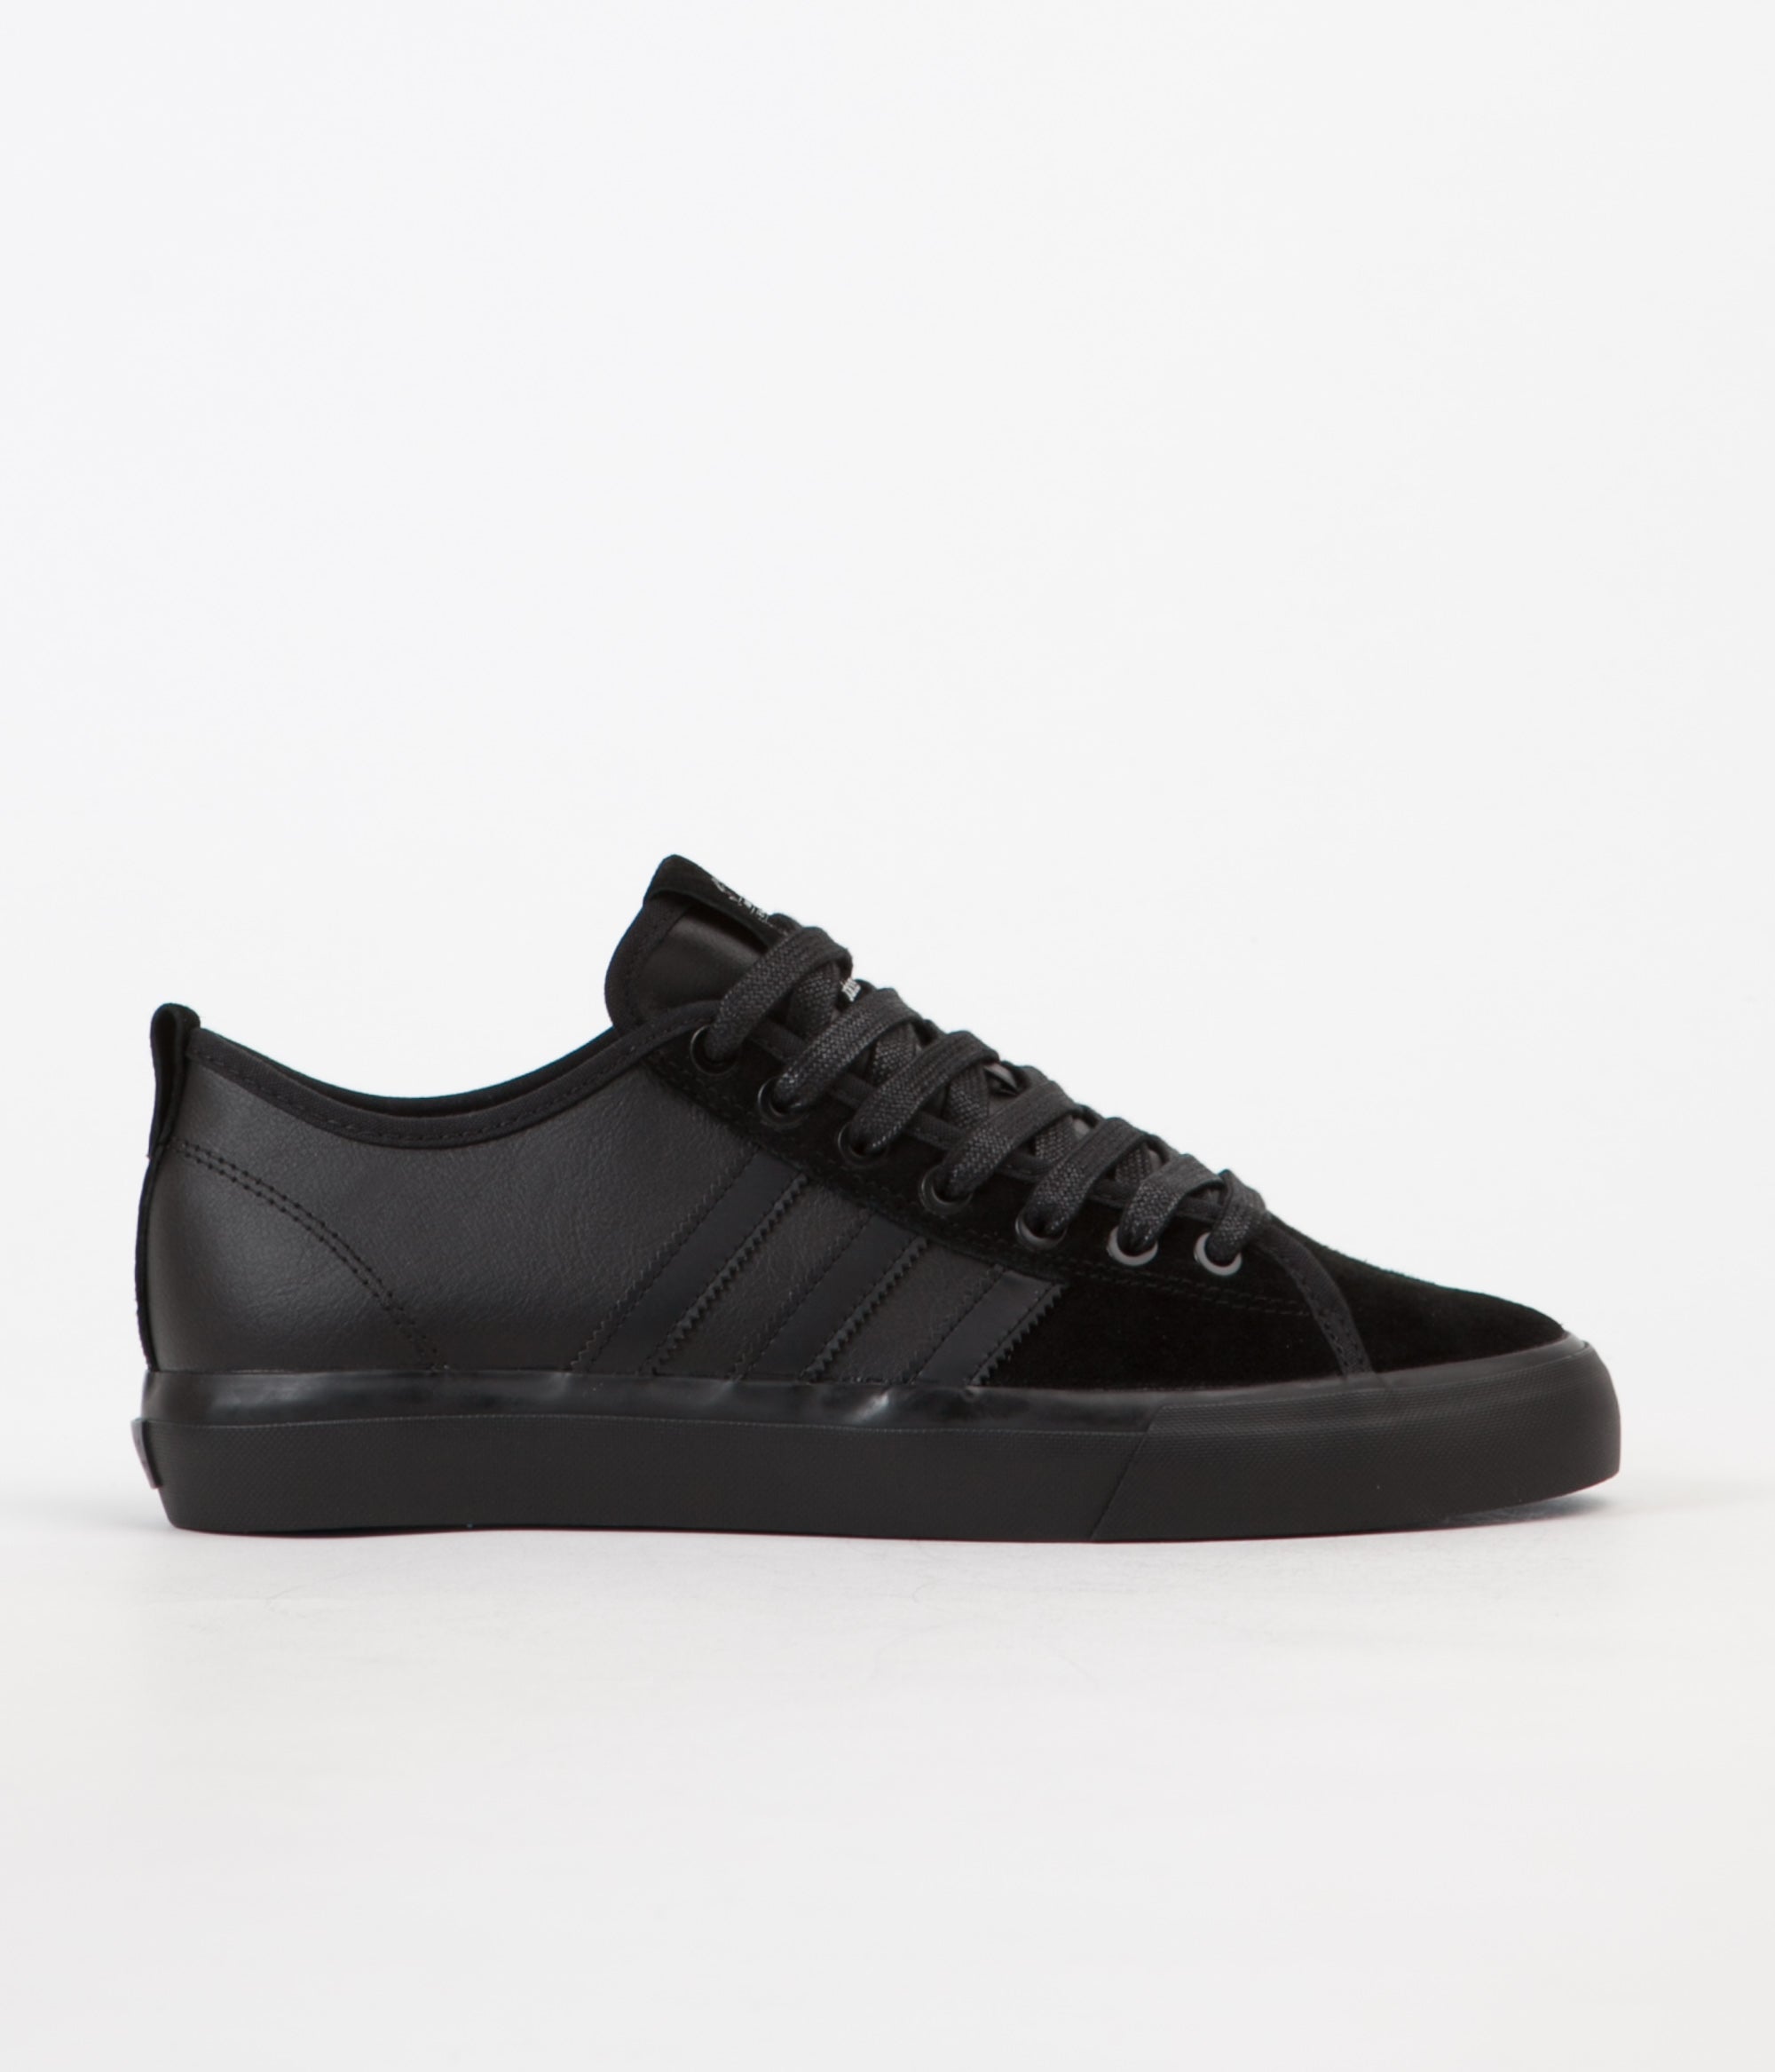 Adidas x Marc Johnson Matchcourt RX Shoes - Core Black / Core Black ...